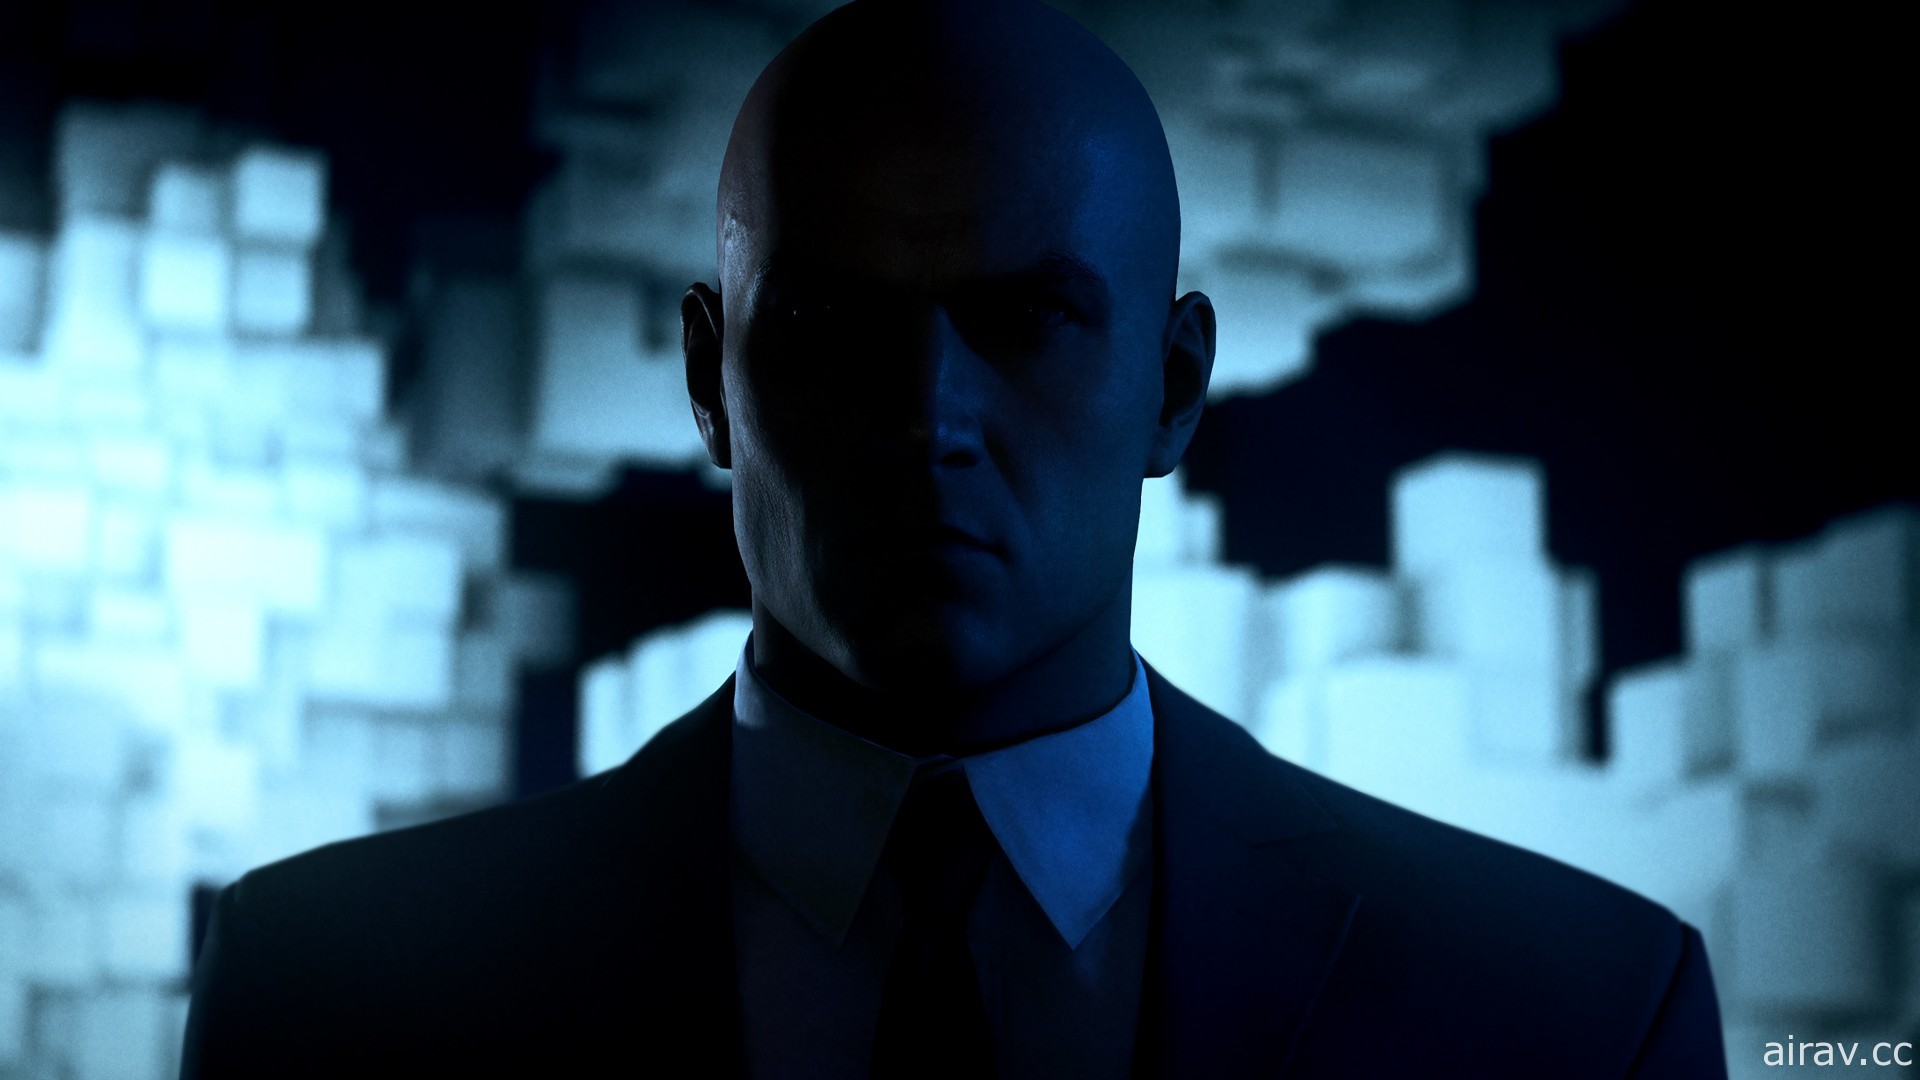 《刺客任务 3》开场动画宣传影片 抢先一探游戏背景故事